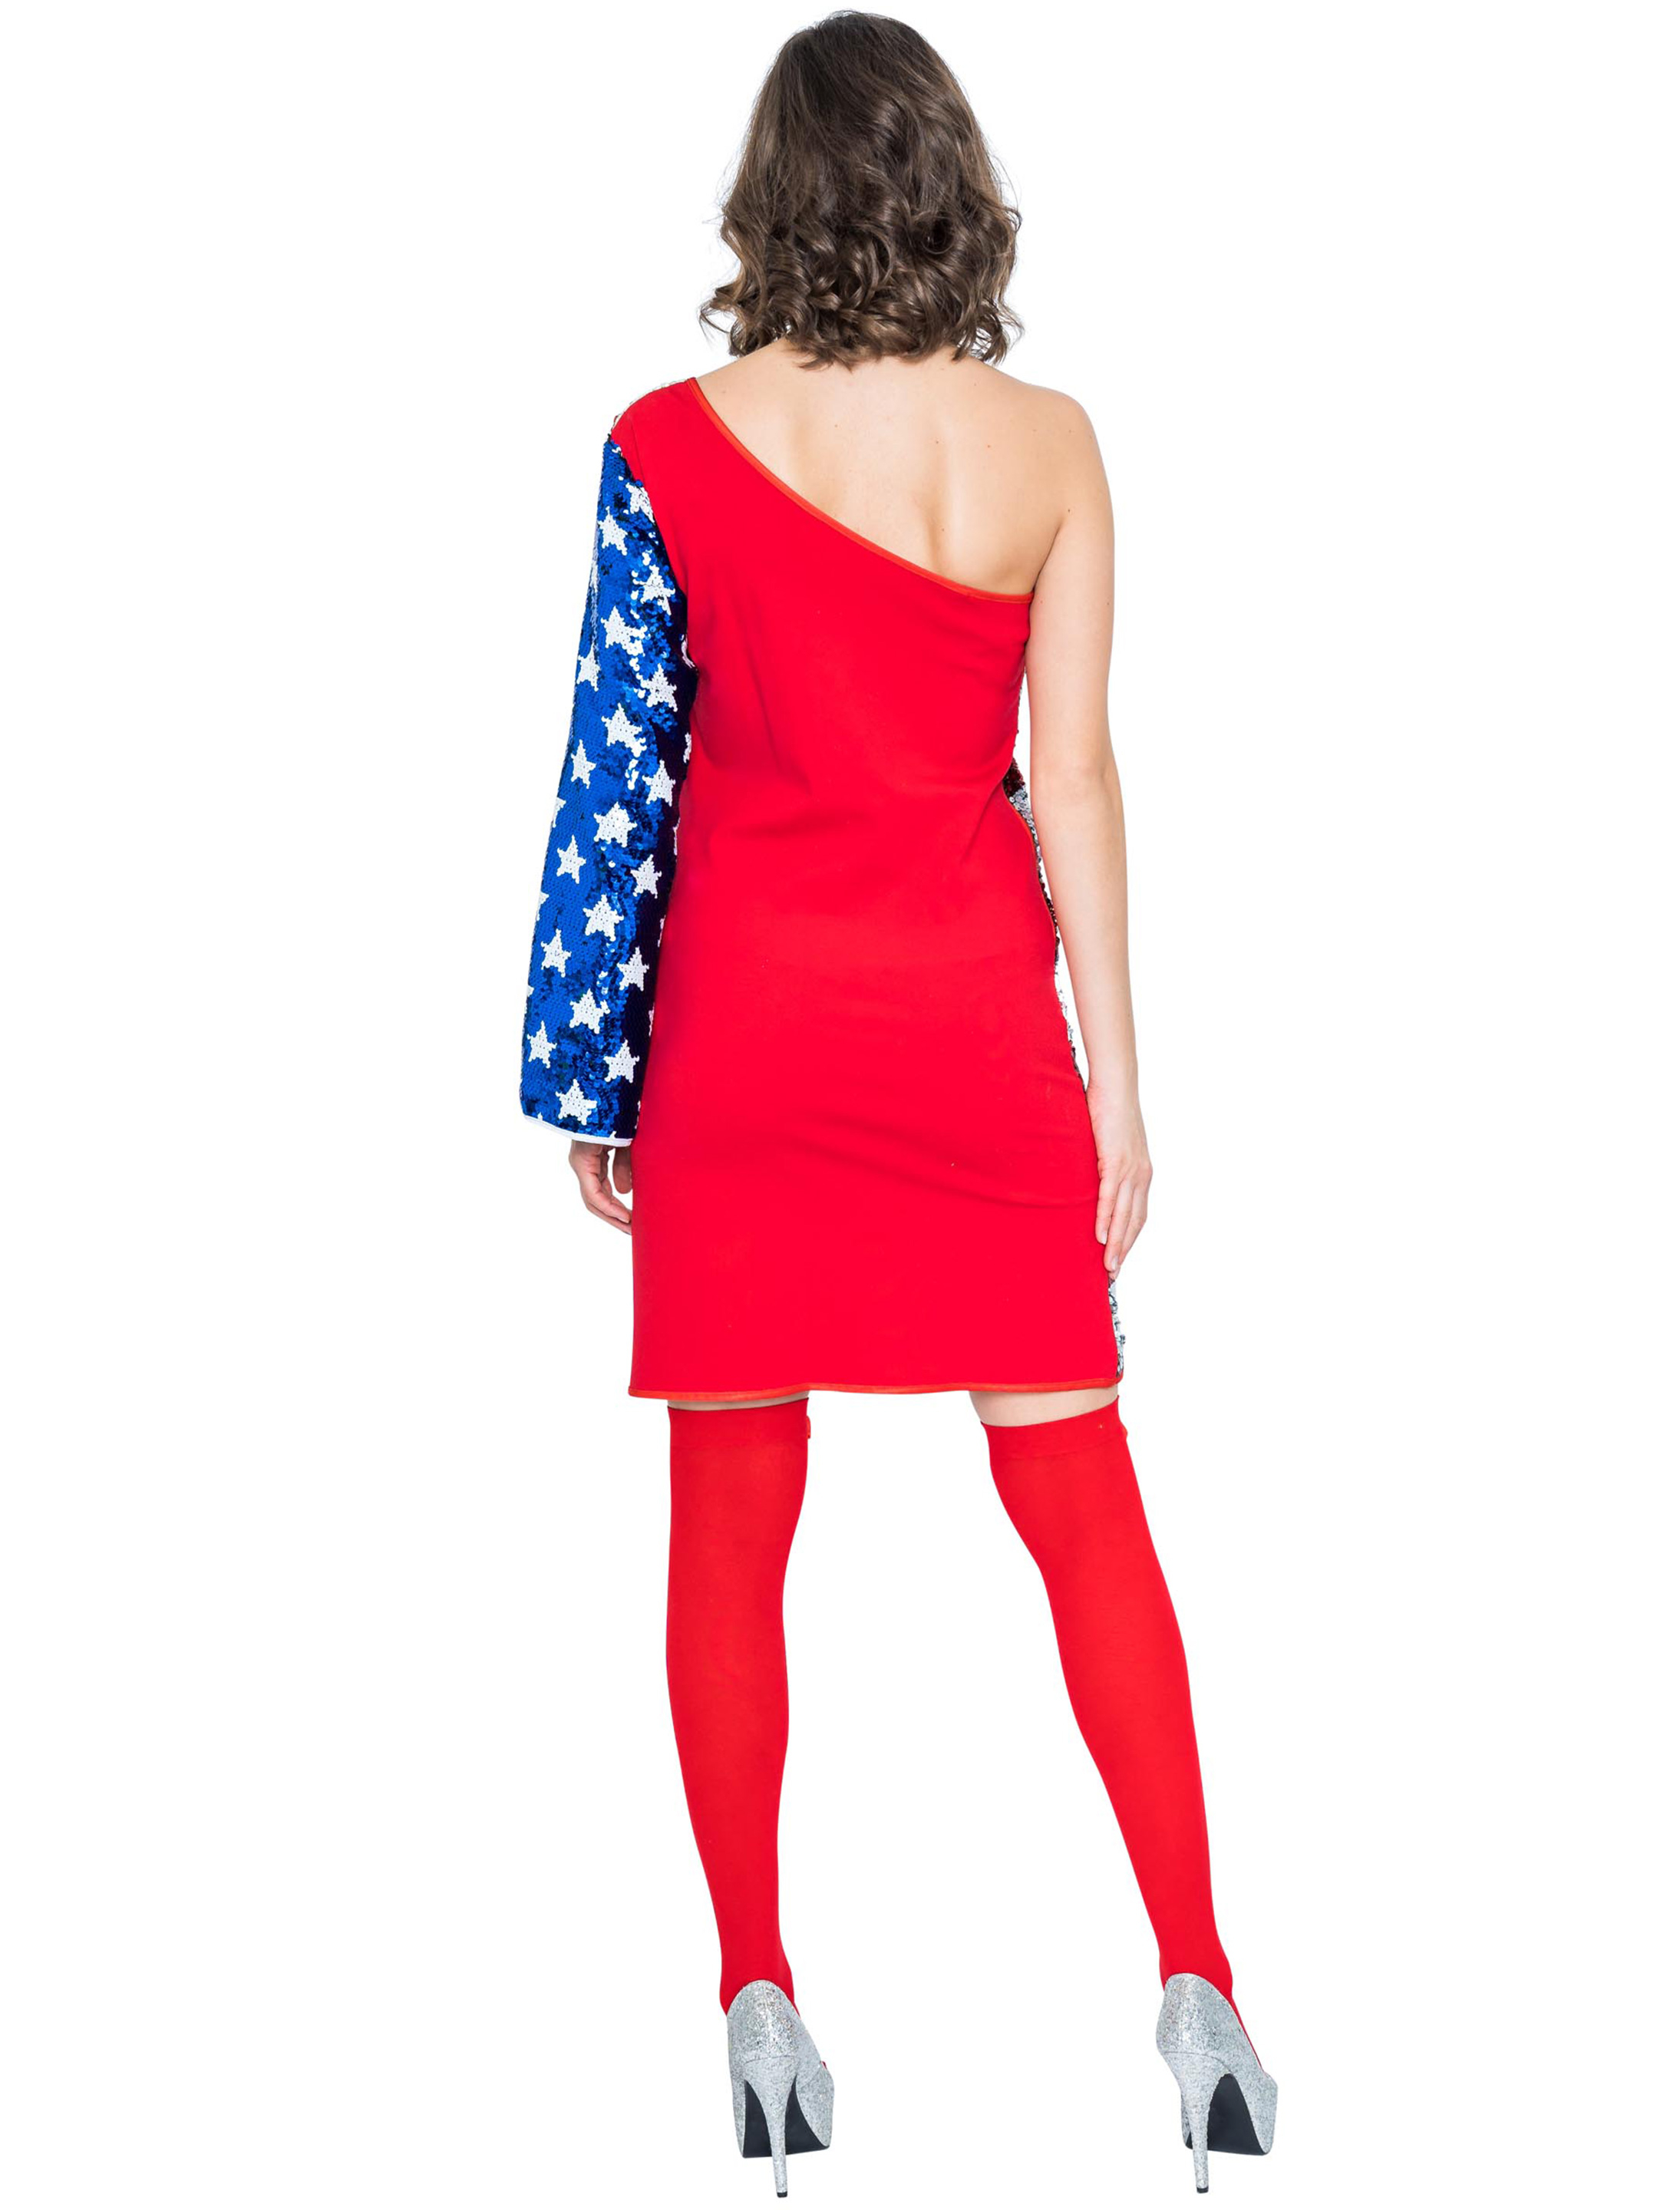 Kleid USA Ein-Schulter Damen rot/weiß/blau S